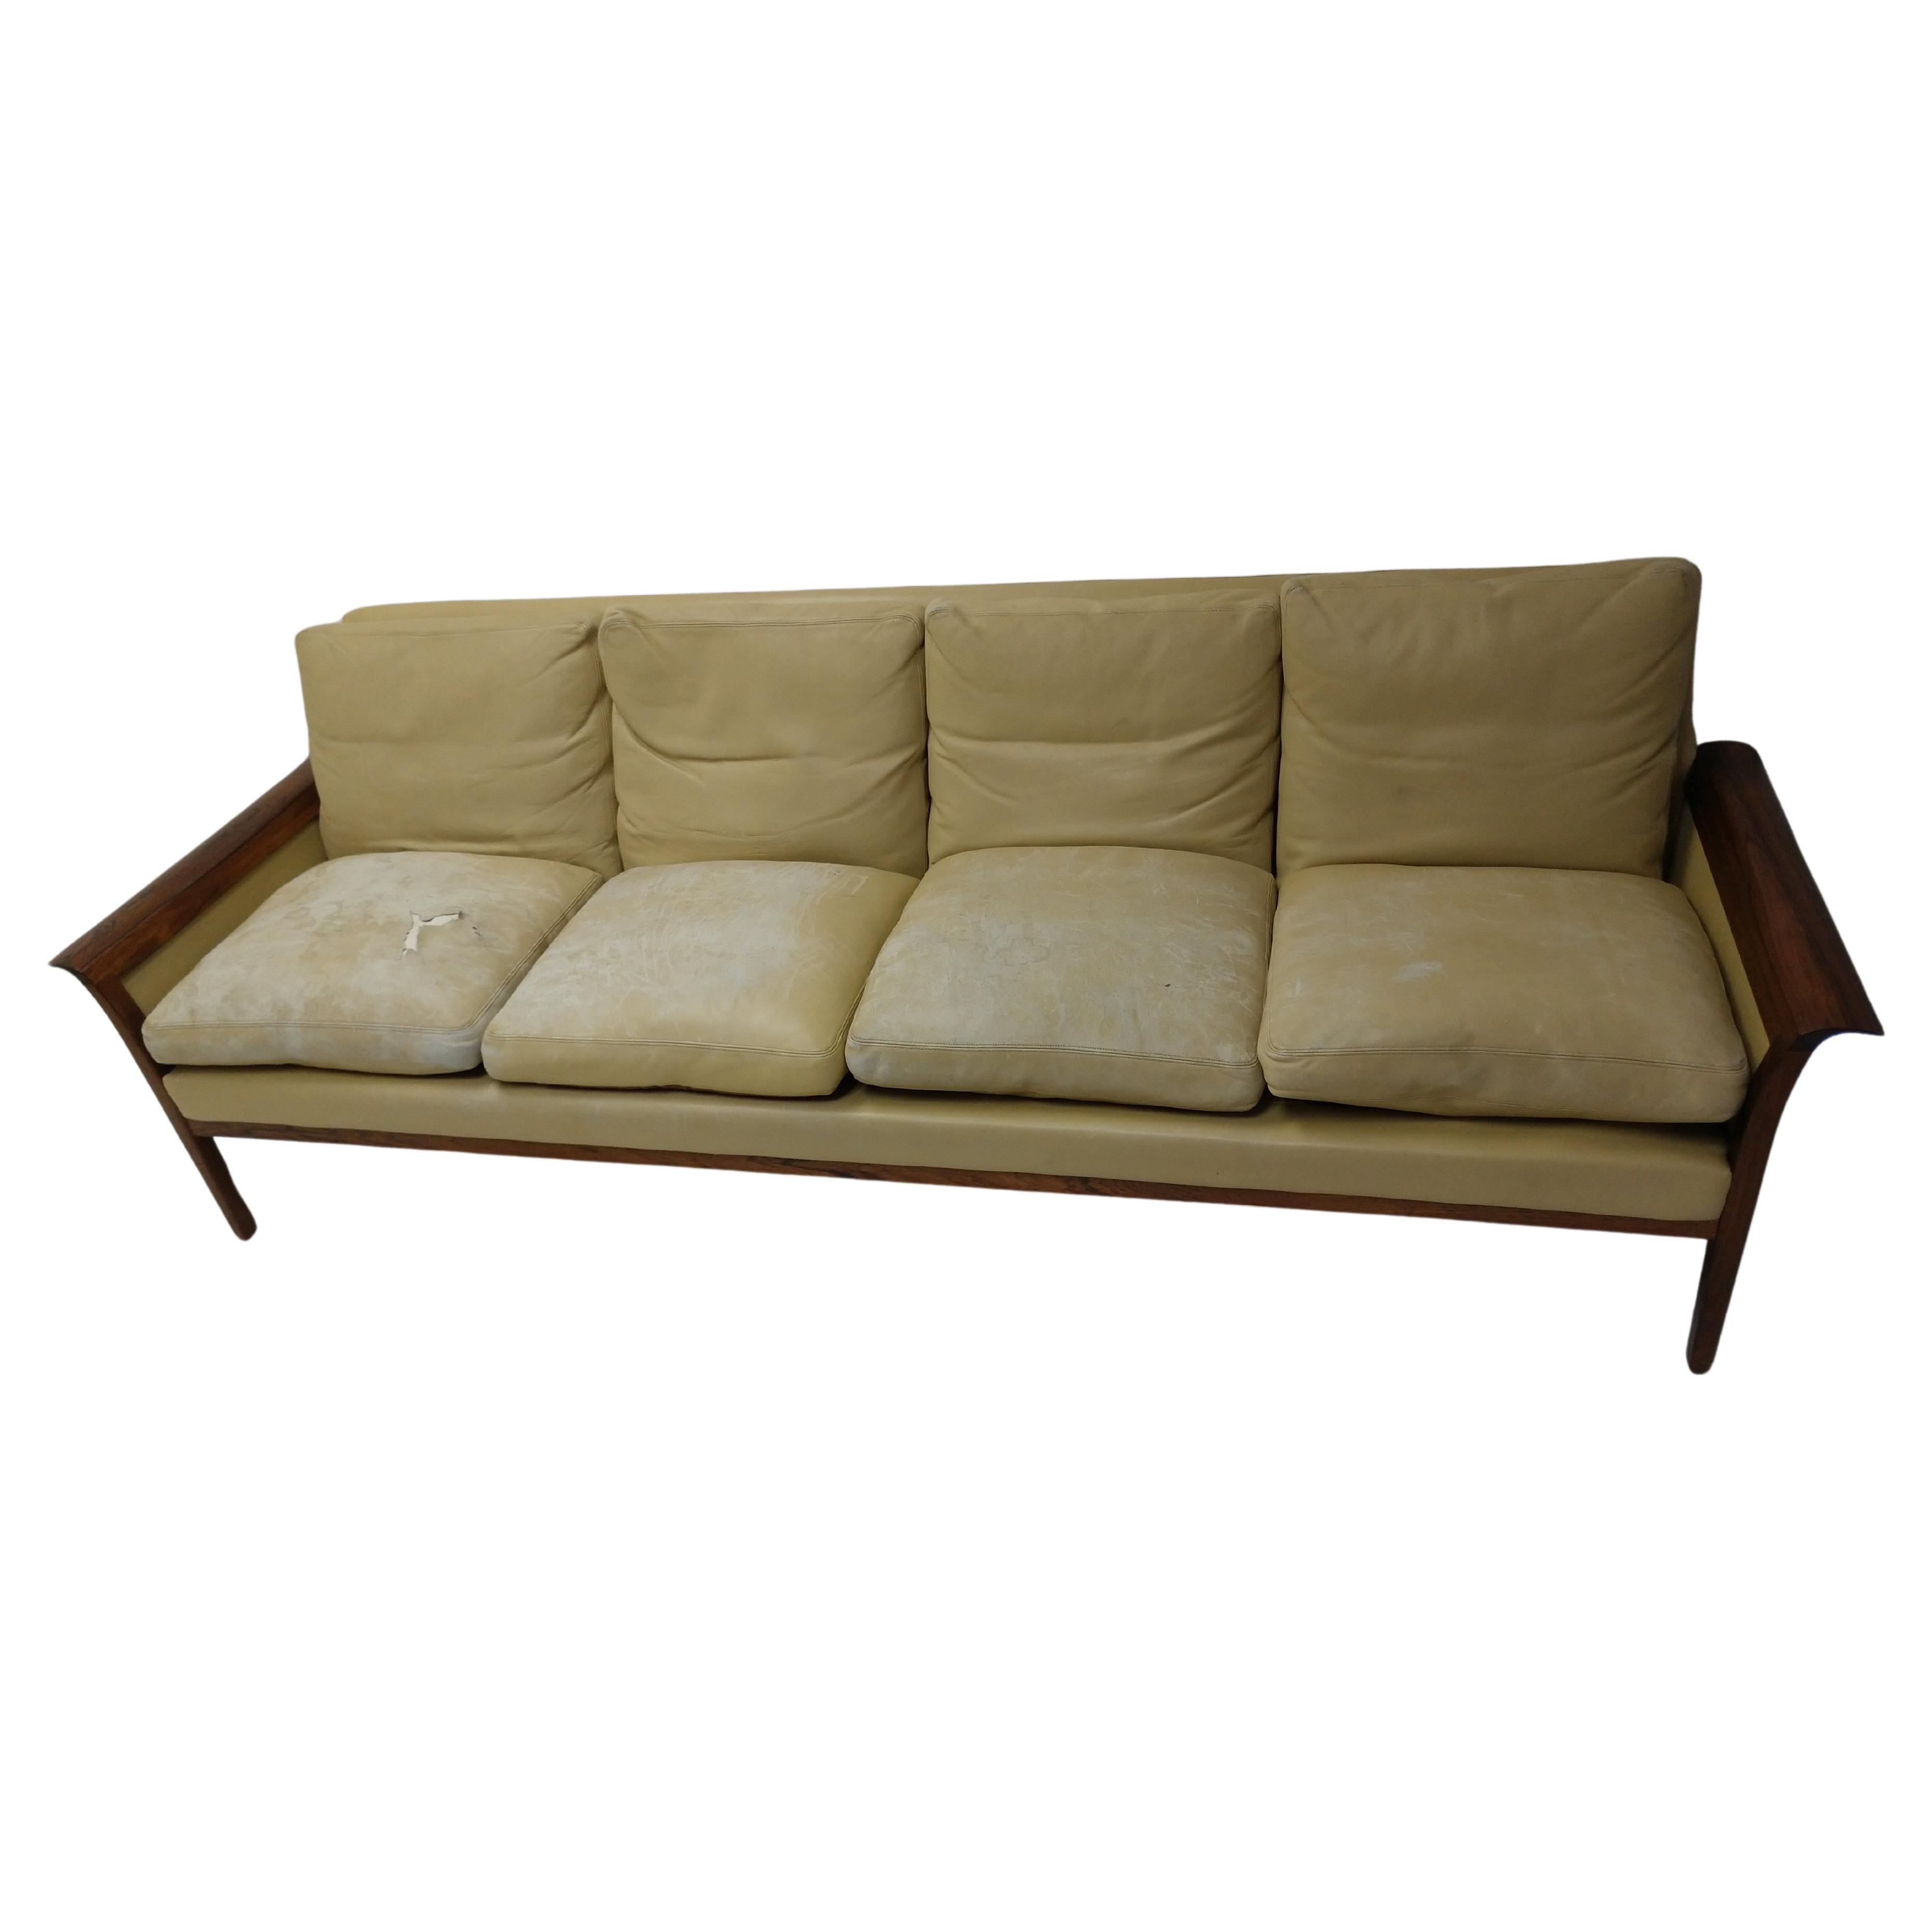 Wunderschönes Sofa aus Leder und Palisanderholz von Knut Saeter für Vatne Møbler. Viersitziges Sofa, sehr geräumig und bequem. Condit des Sofas ist groß, aber Kissen haben erhebliche Abnutzung. Palisander hat eine schöne Maserung und ist in